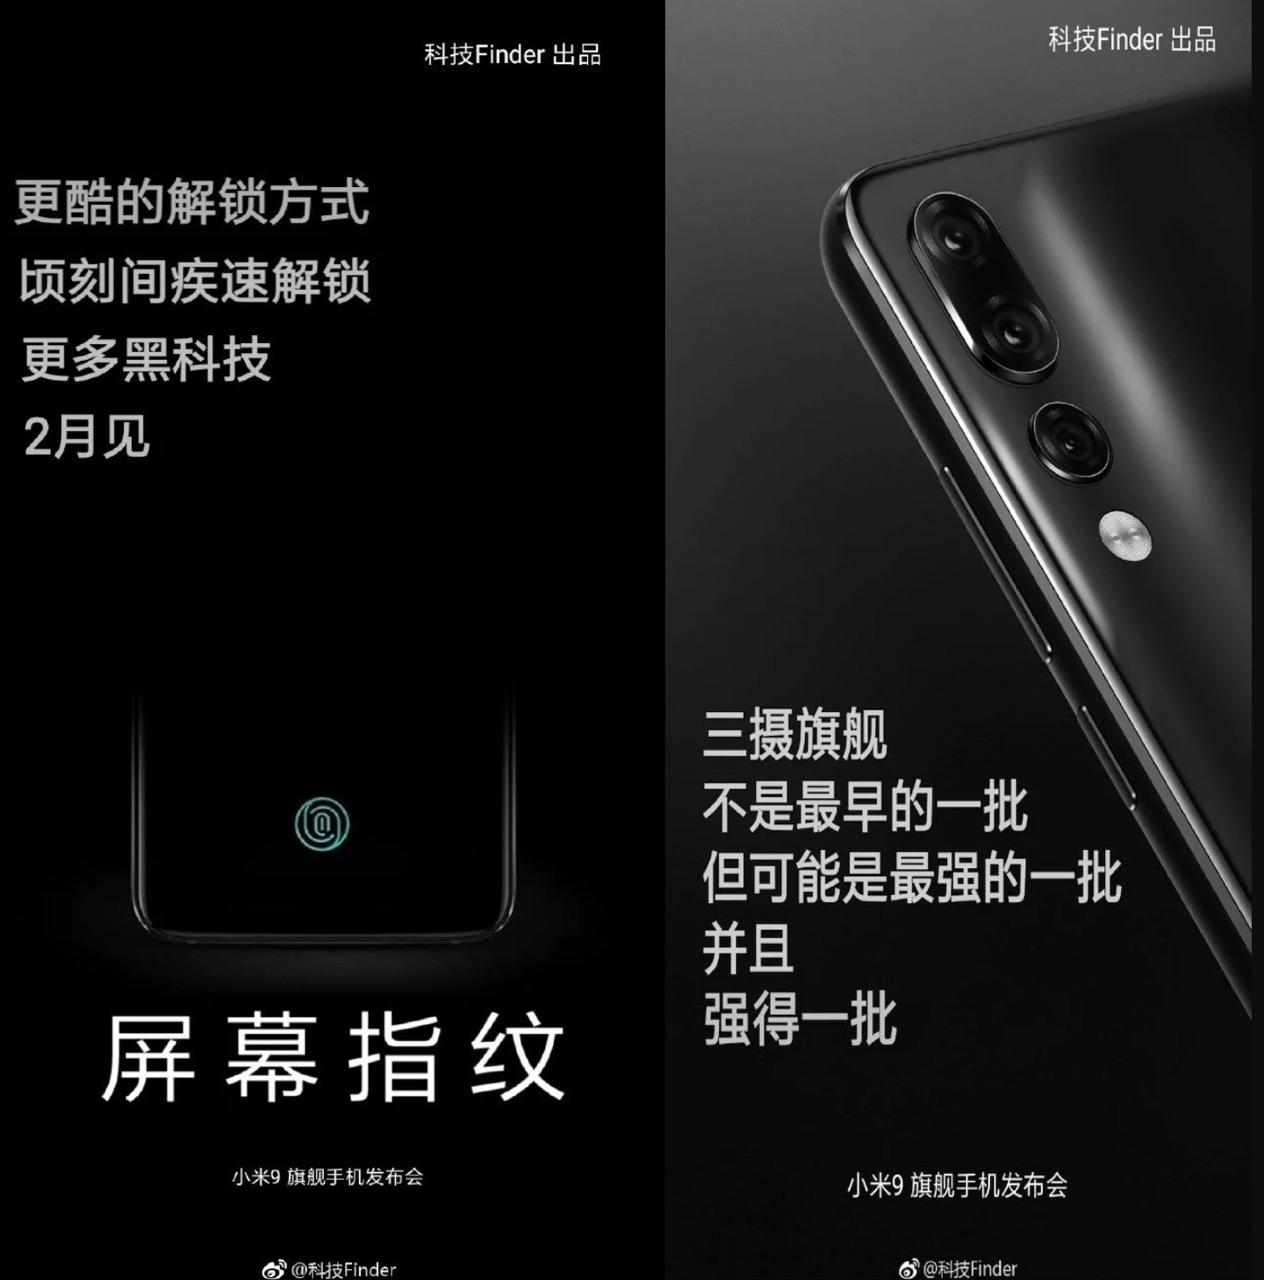 بإمكان Xiaomi تقديم جهاز Mi 9 خلال شهر فبراير 2